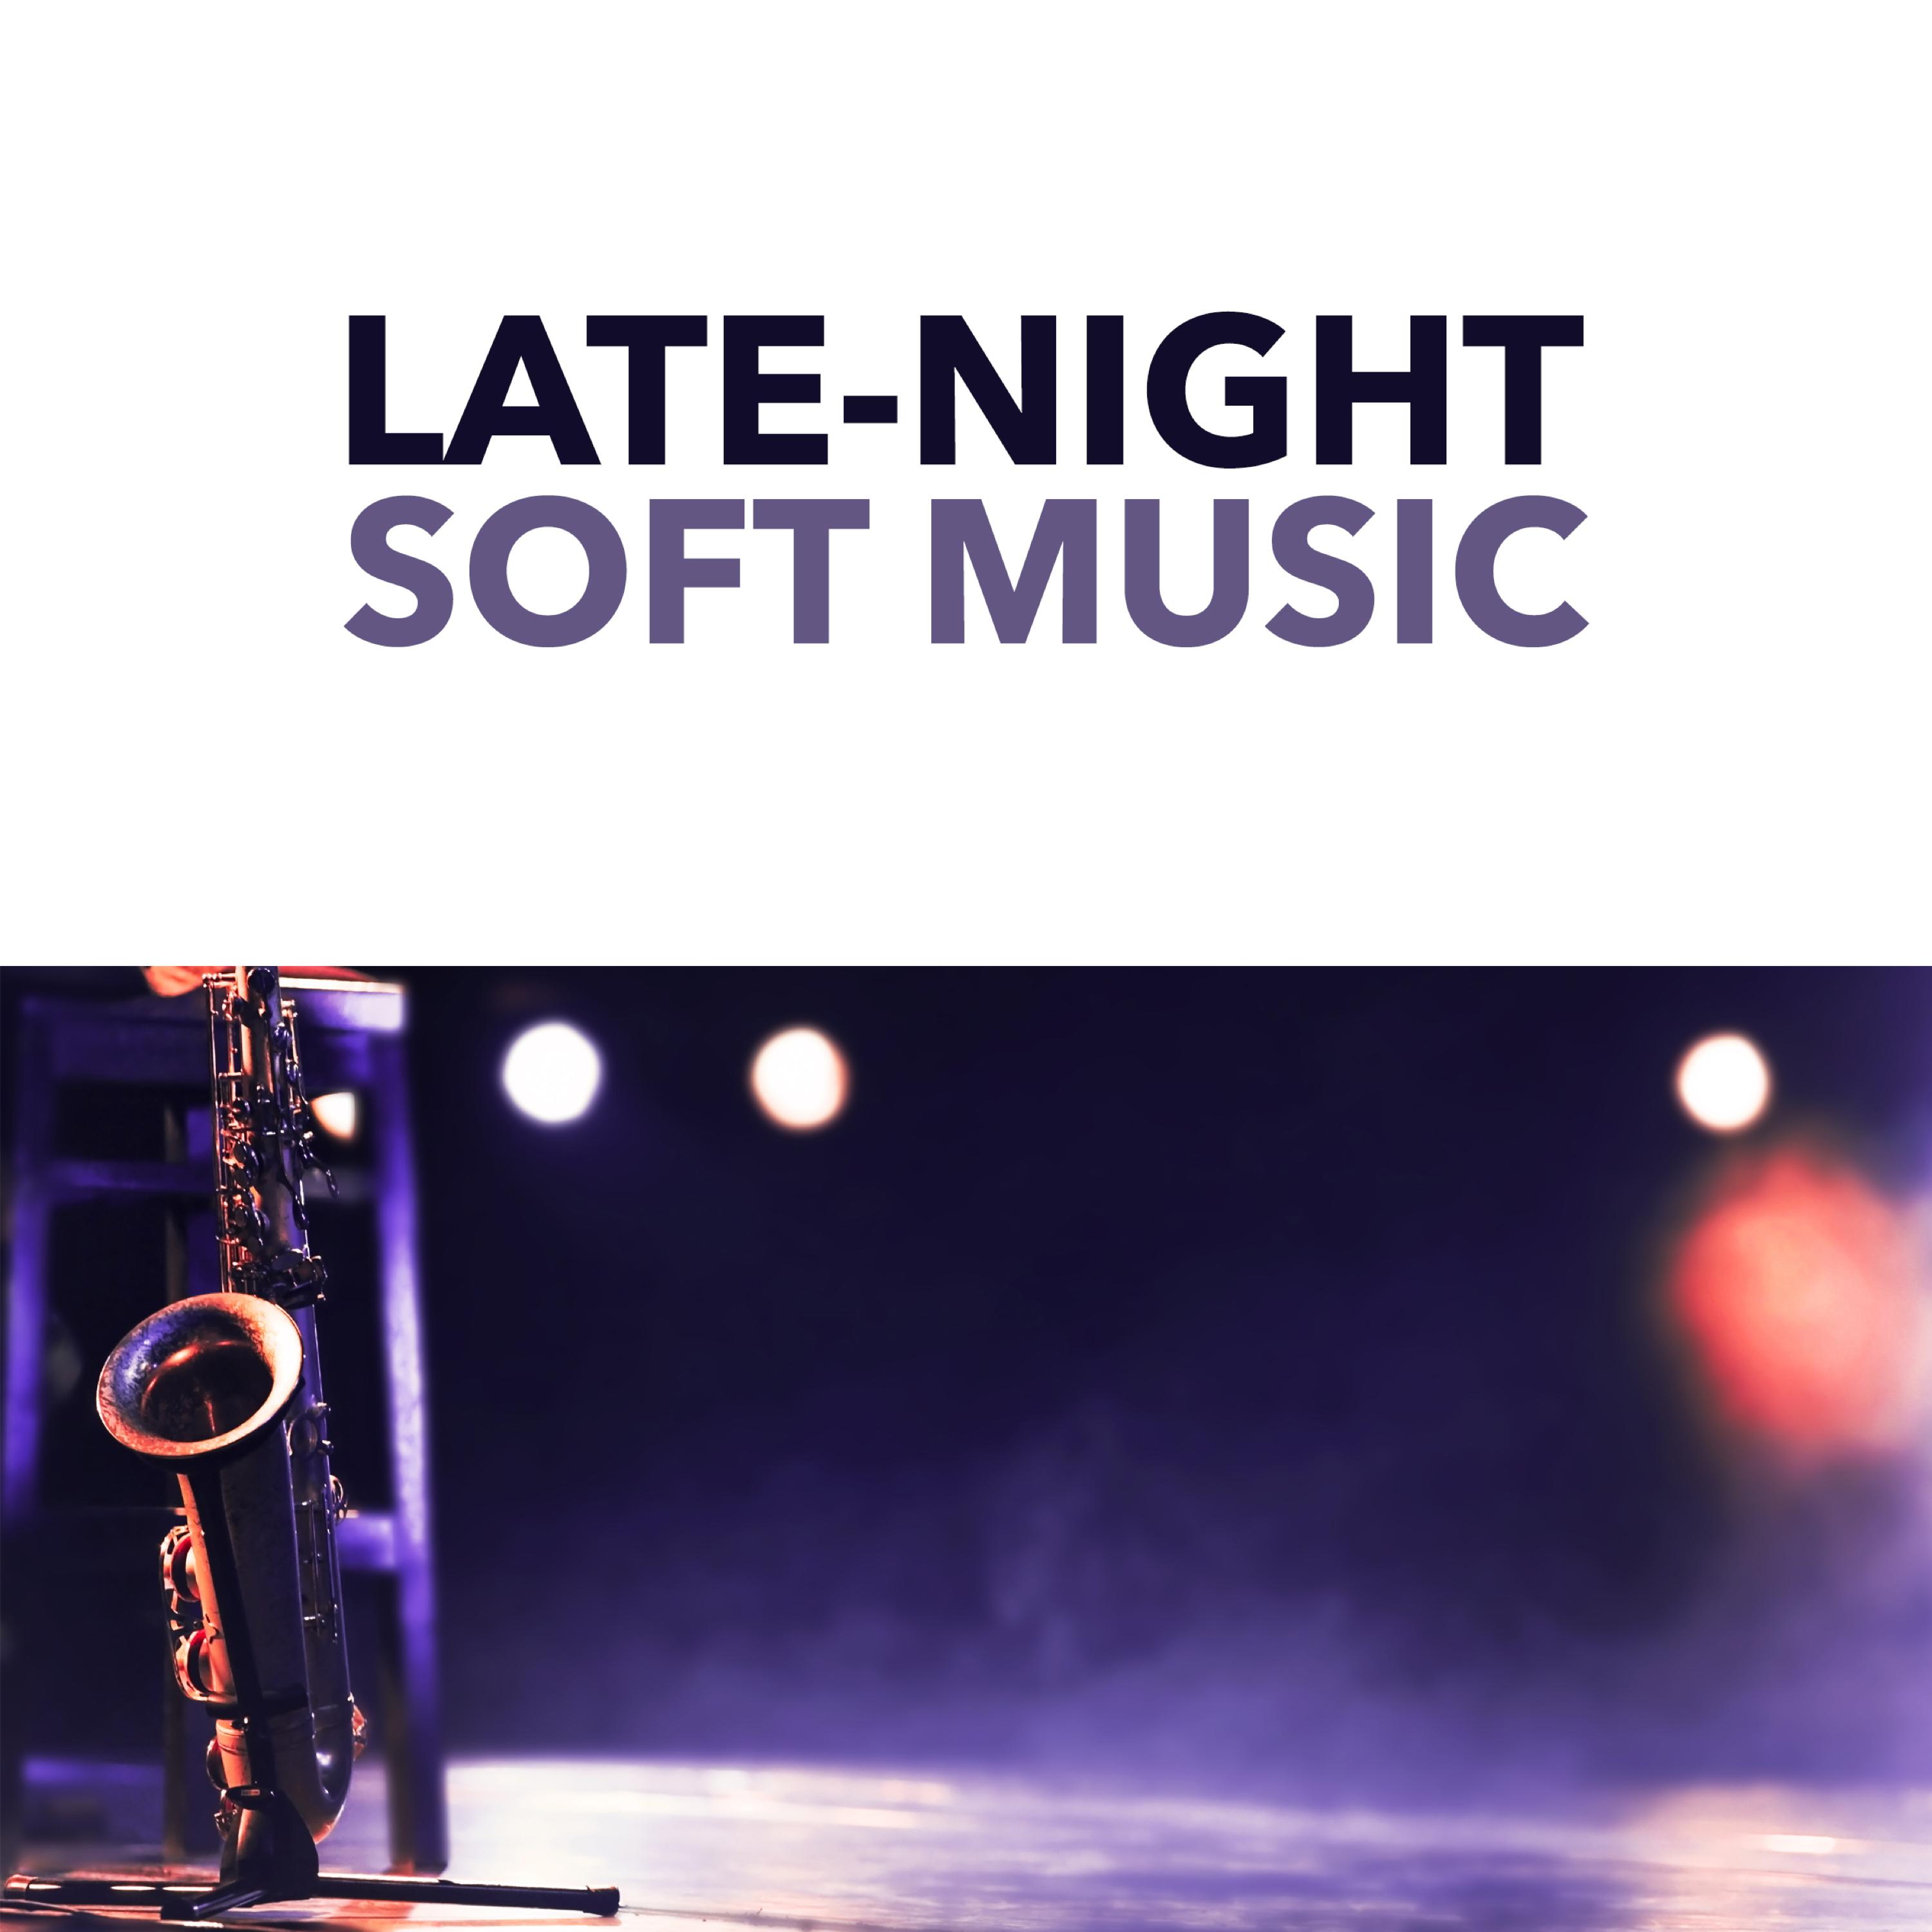 Late-Night Soft Music